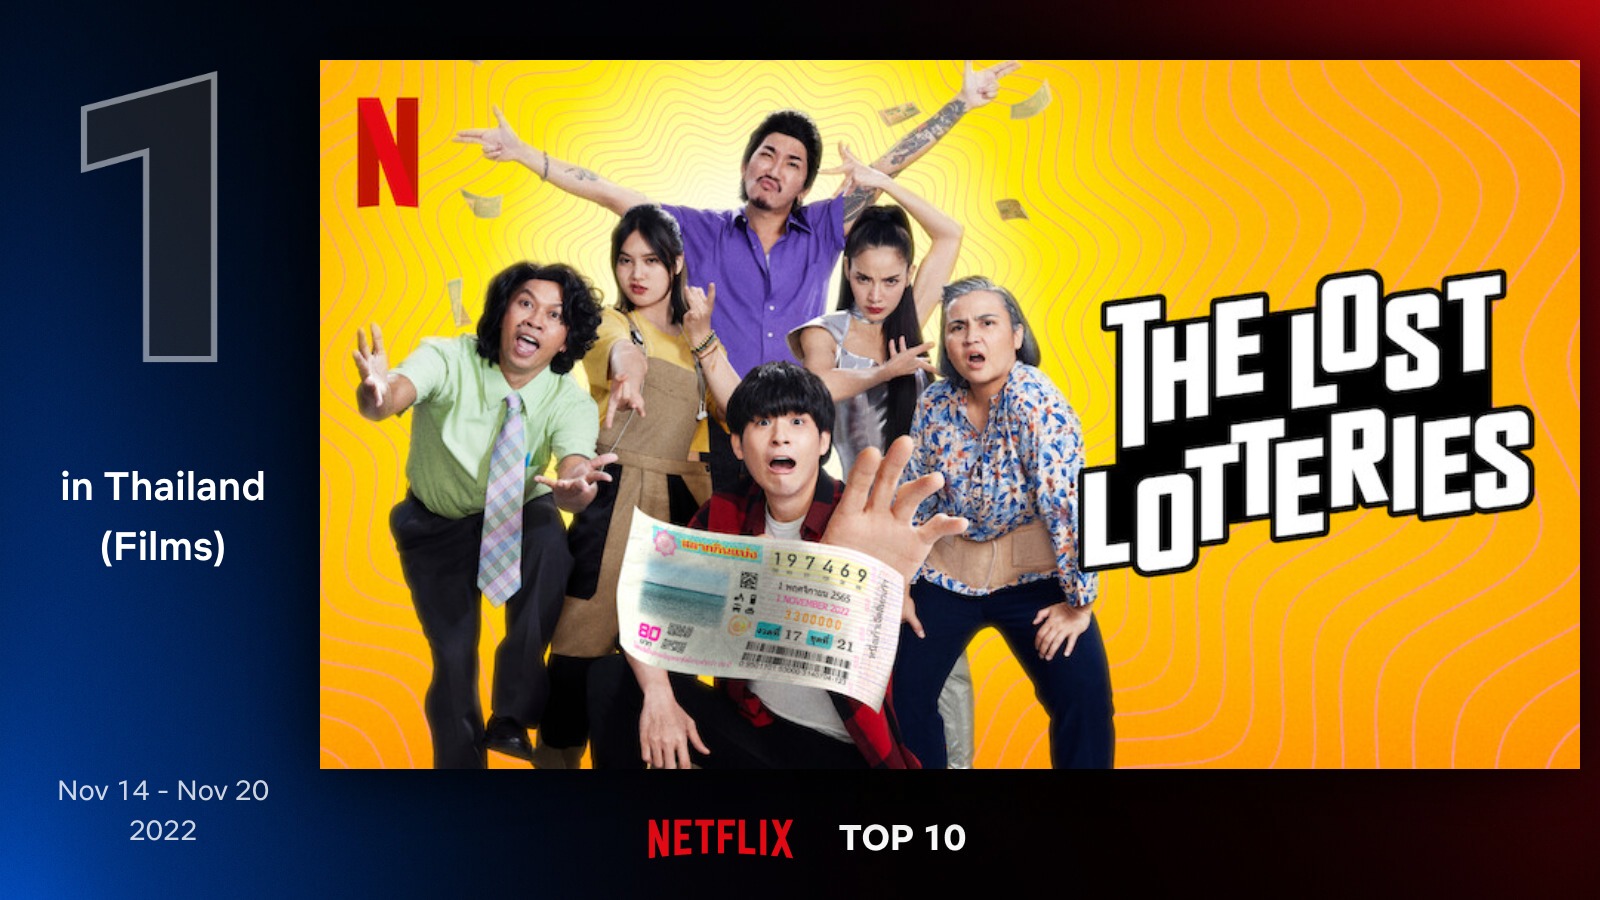 ยิ่งกว่าถูกรางวัล! แก๊งคนห่วยทั้ง 5 พา “ปฏิบัติการกู้หวย” ครองอันดับ 1 บน Netflix Top 10 ในประเทศไทย